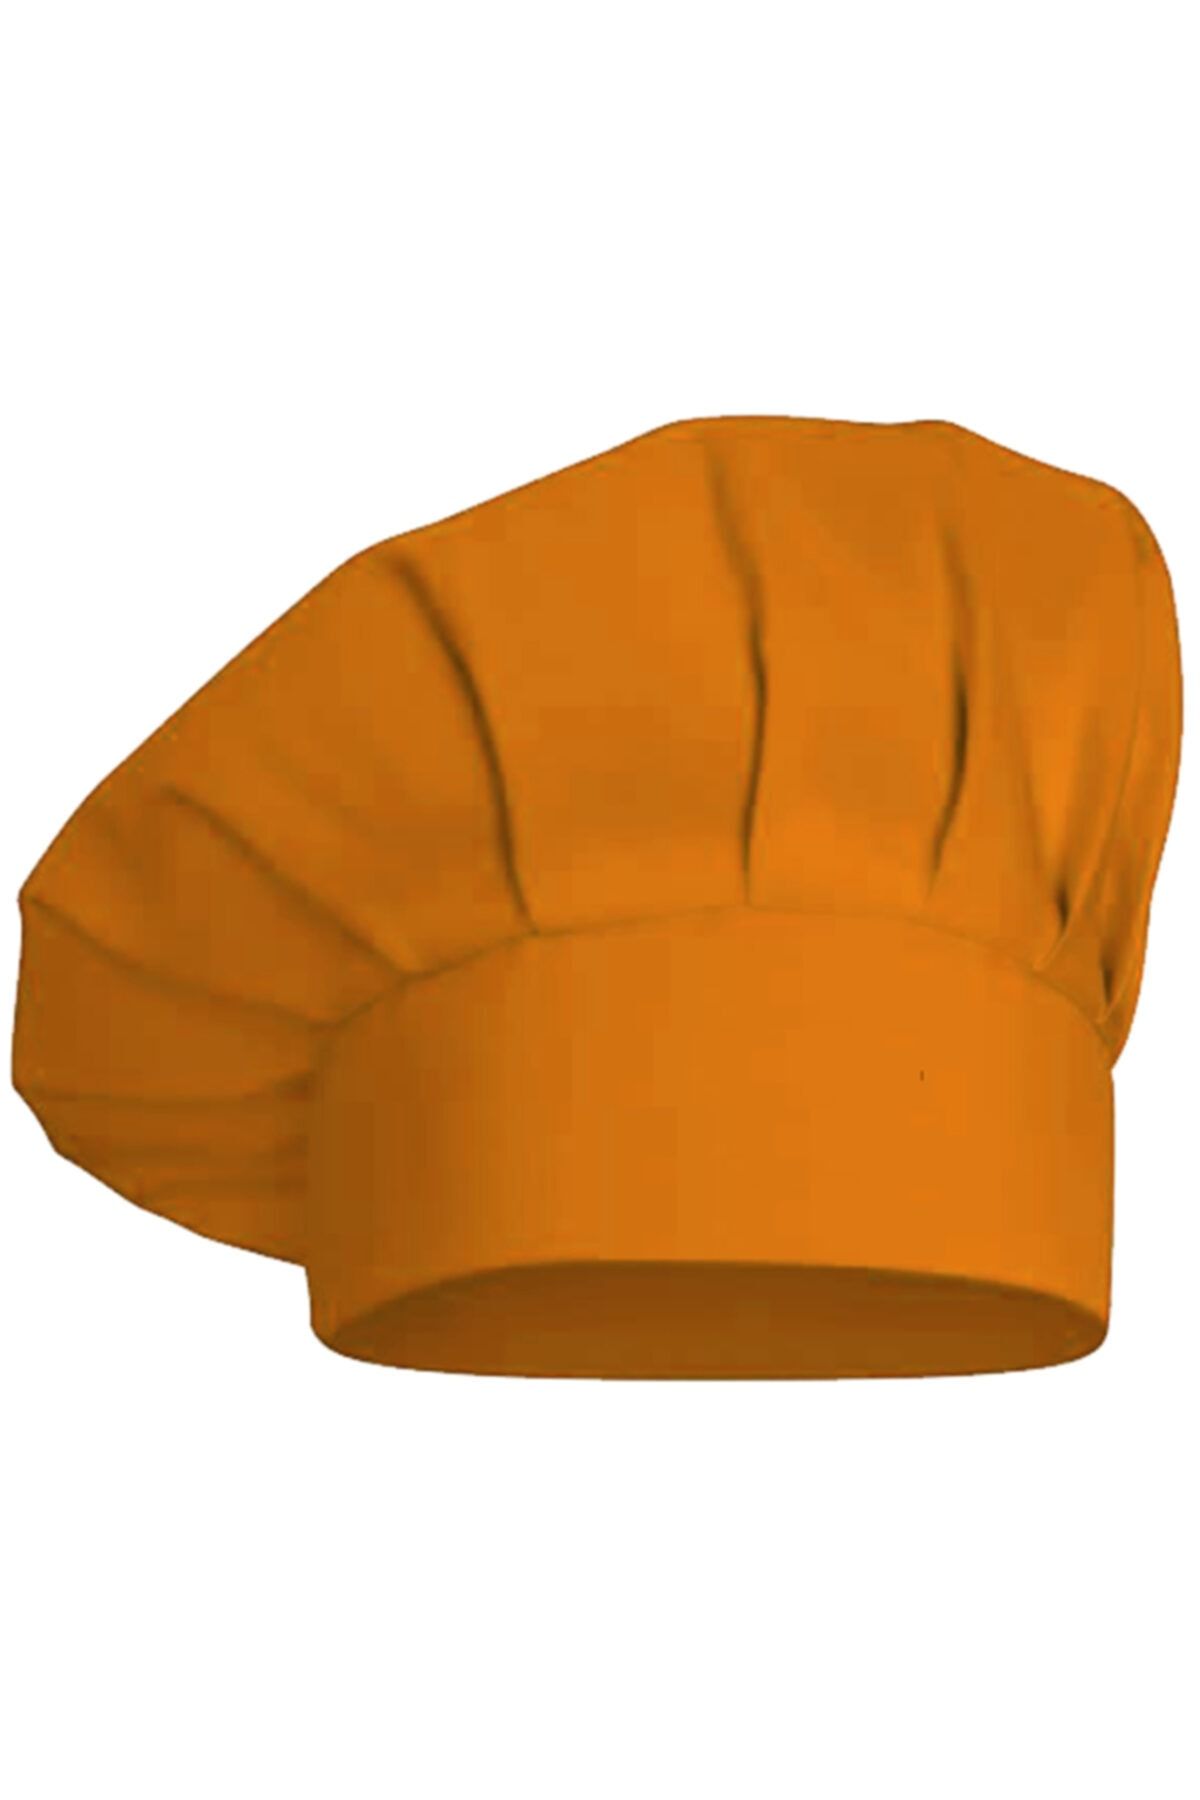 medusaforma Turuncu Aşçı Şapkası Mutfak Şef Mantar Kep